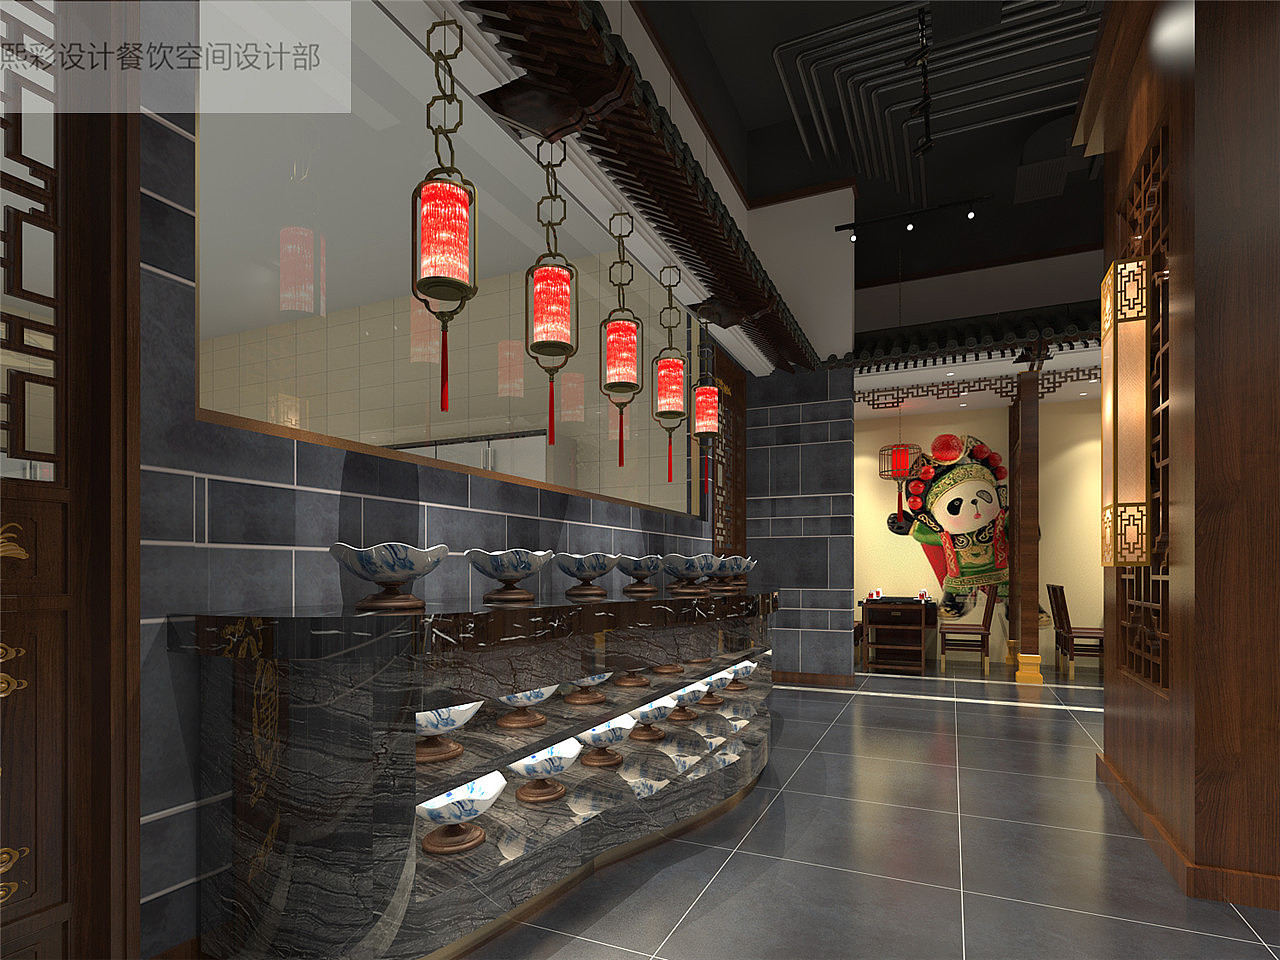 中式餐厅墙面装饰品火锅店